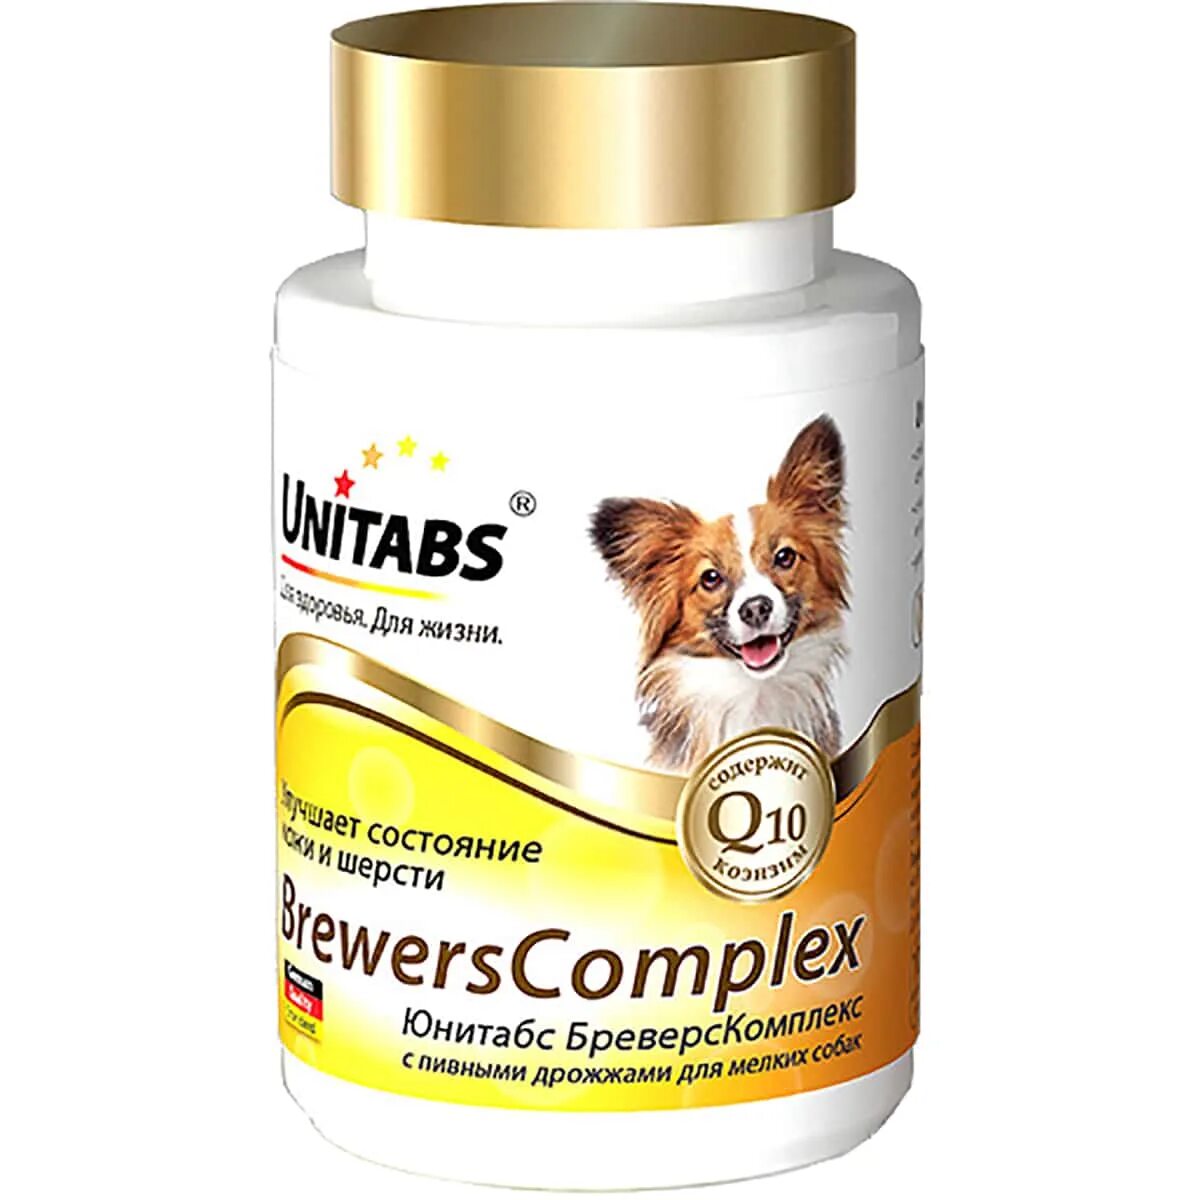 ЭКОПРОМ UNITABS витамины для собак крупных пород q10 Immuno Complex 100 таб u205. Юнитабс CALCIPLUS С q10 для собак 100 таб. UNITABS витамины для собак. Витамины Юнитабс для собак ИММУНОКОМПЛЕКС. Как давать витамины собаке